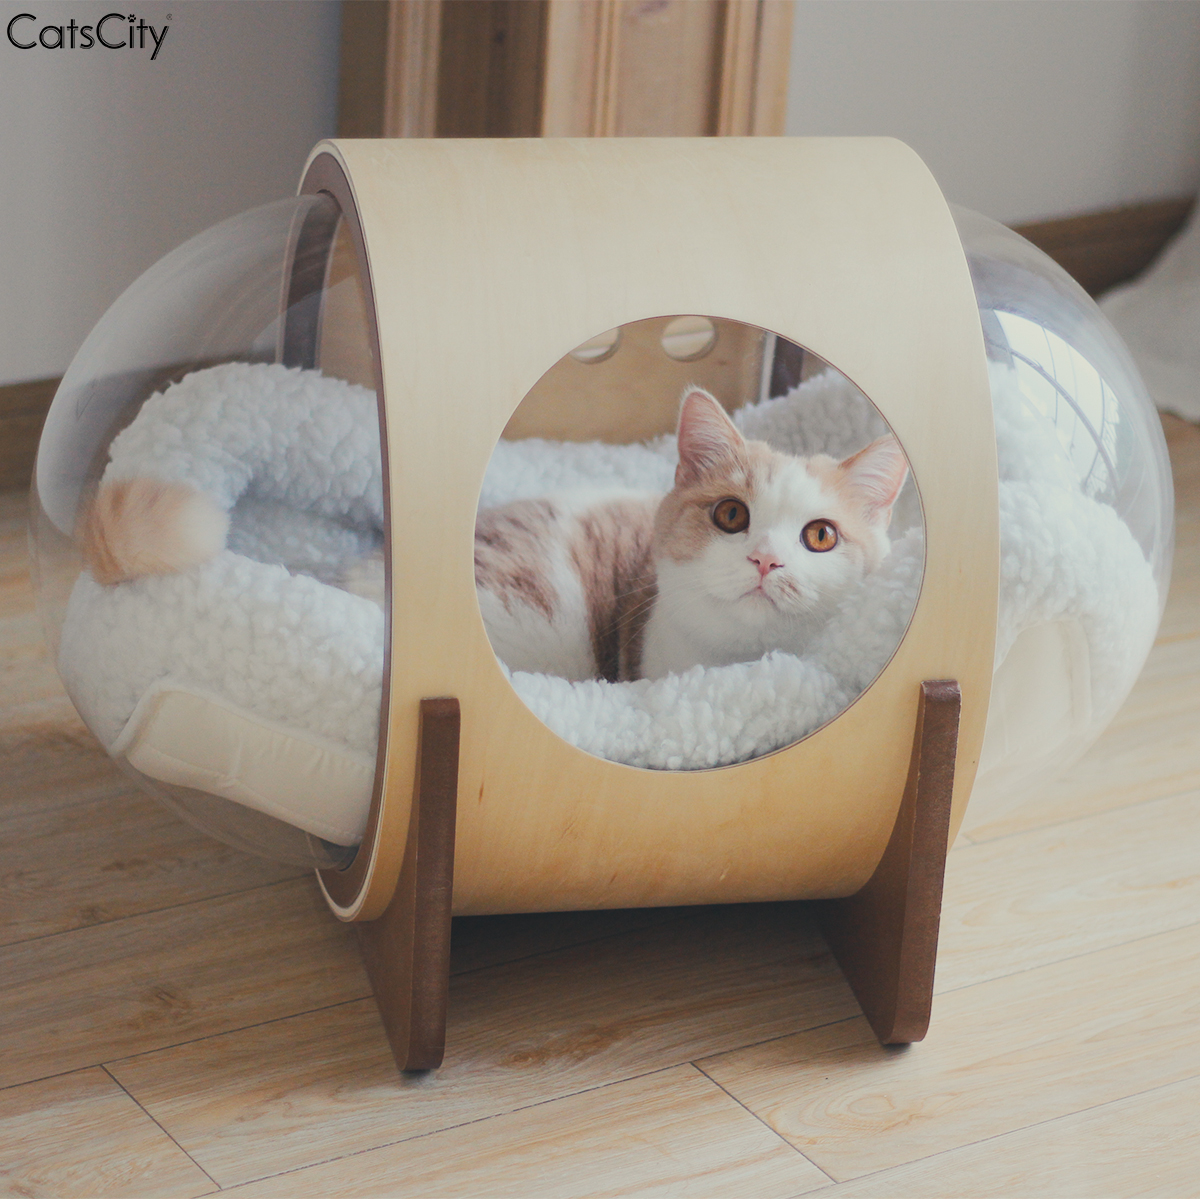 CatsCityUFO太空舱胶囊星球猫窝四季通用宠物猫床木制不粘毛狗窝